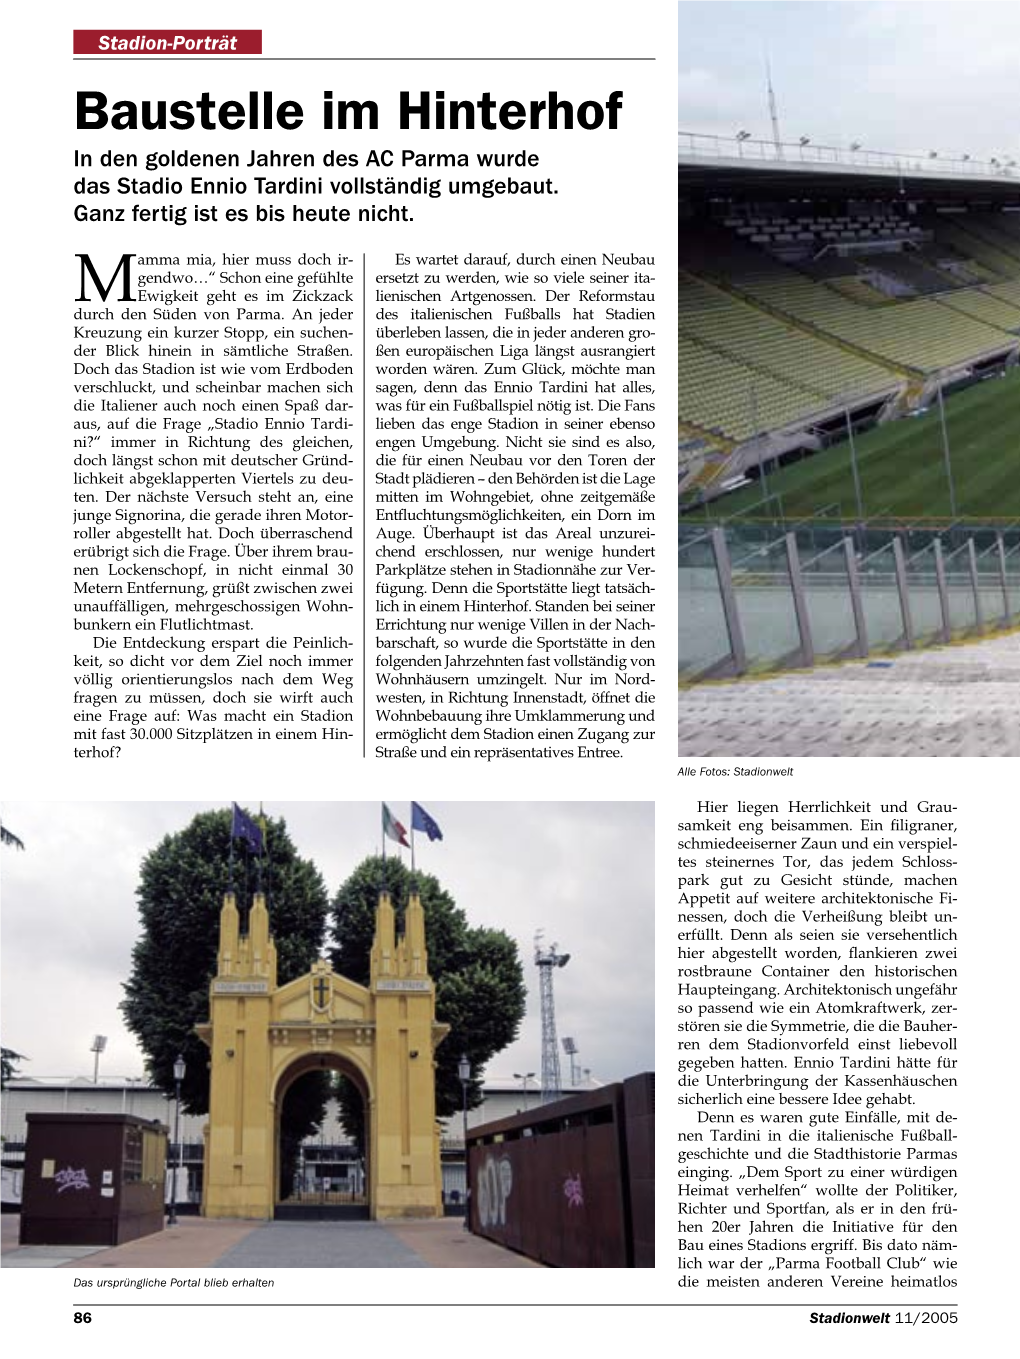 Baustelle Im Hinterhof in Den Goldenen Jahren Des AC Parma Wurde Das Stadio Ennio Tardini Vollständig Umgebaut